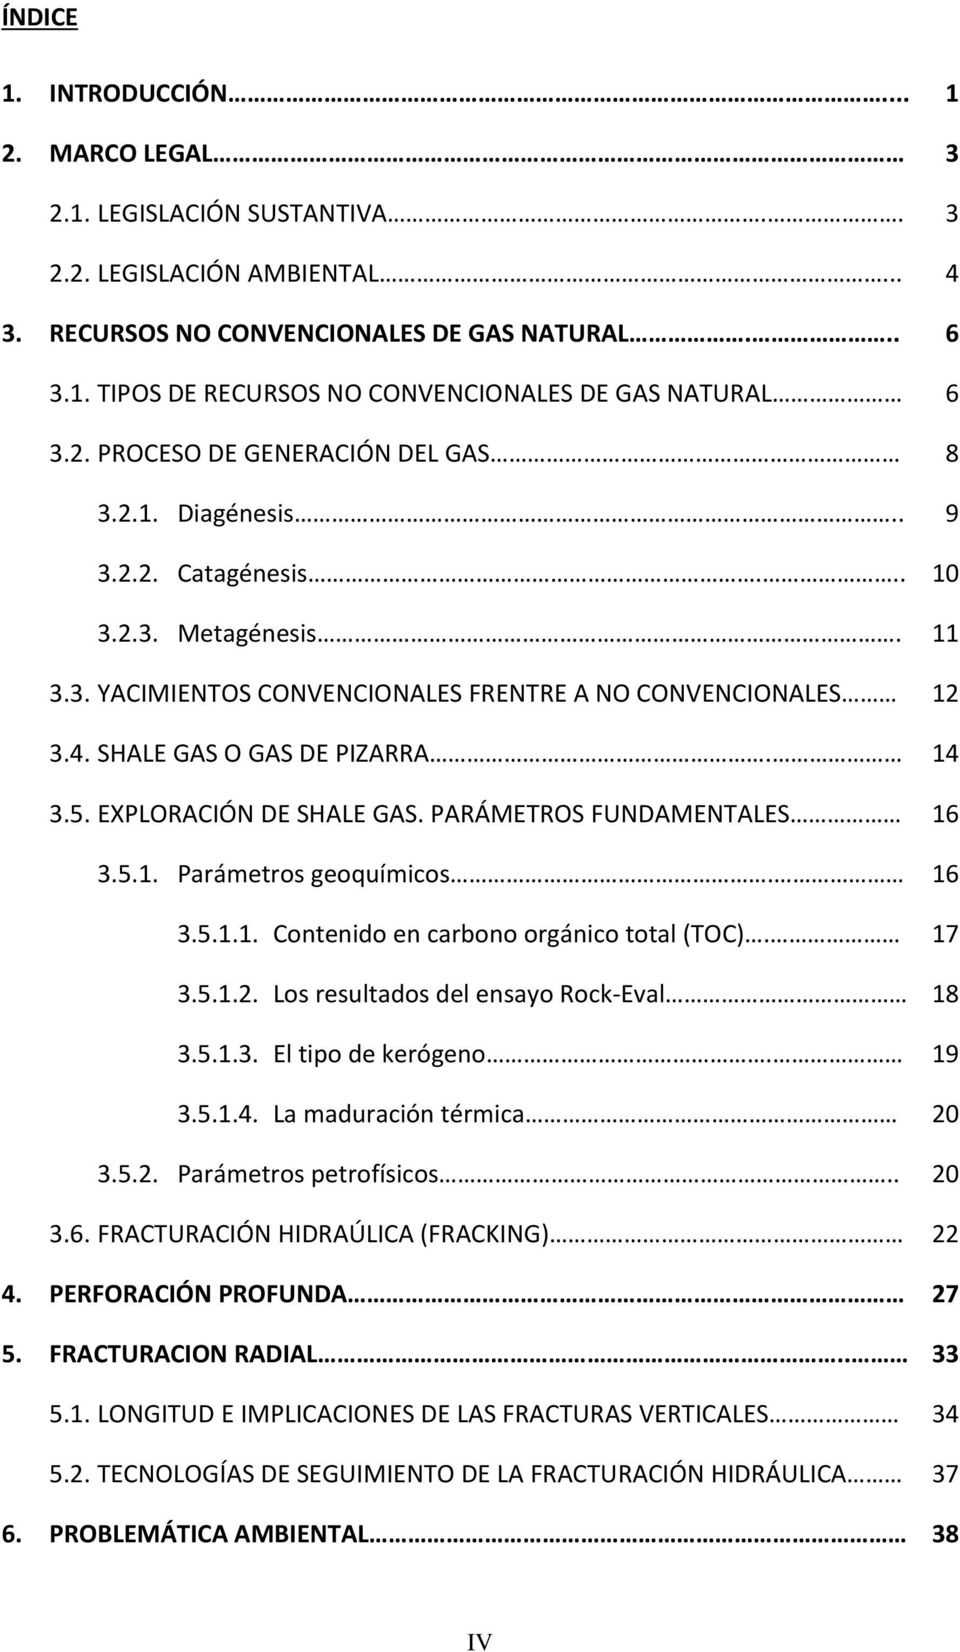 14 3.5. EXPLORACIÓN DE SHALE GAS. PARÁMETROS FUNDAMENTALES 16 3.5.1. Parámetros geoquímicos. 16 3.5.1.1. Contenido en carbono orgánico total (TOC). 17 3.5.1.2.